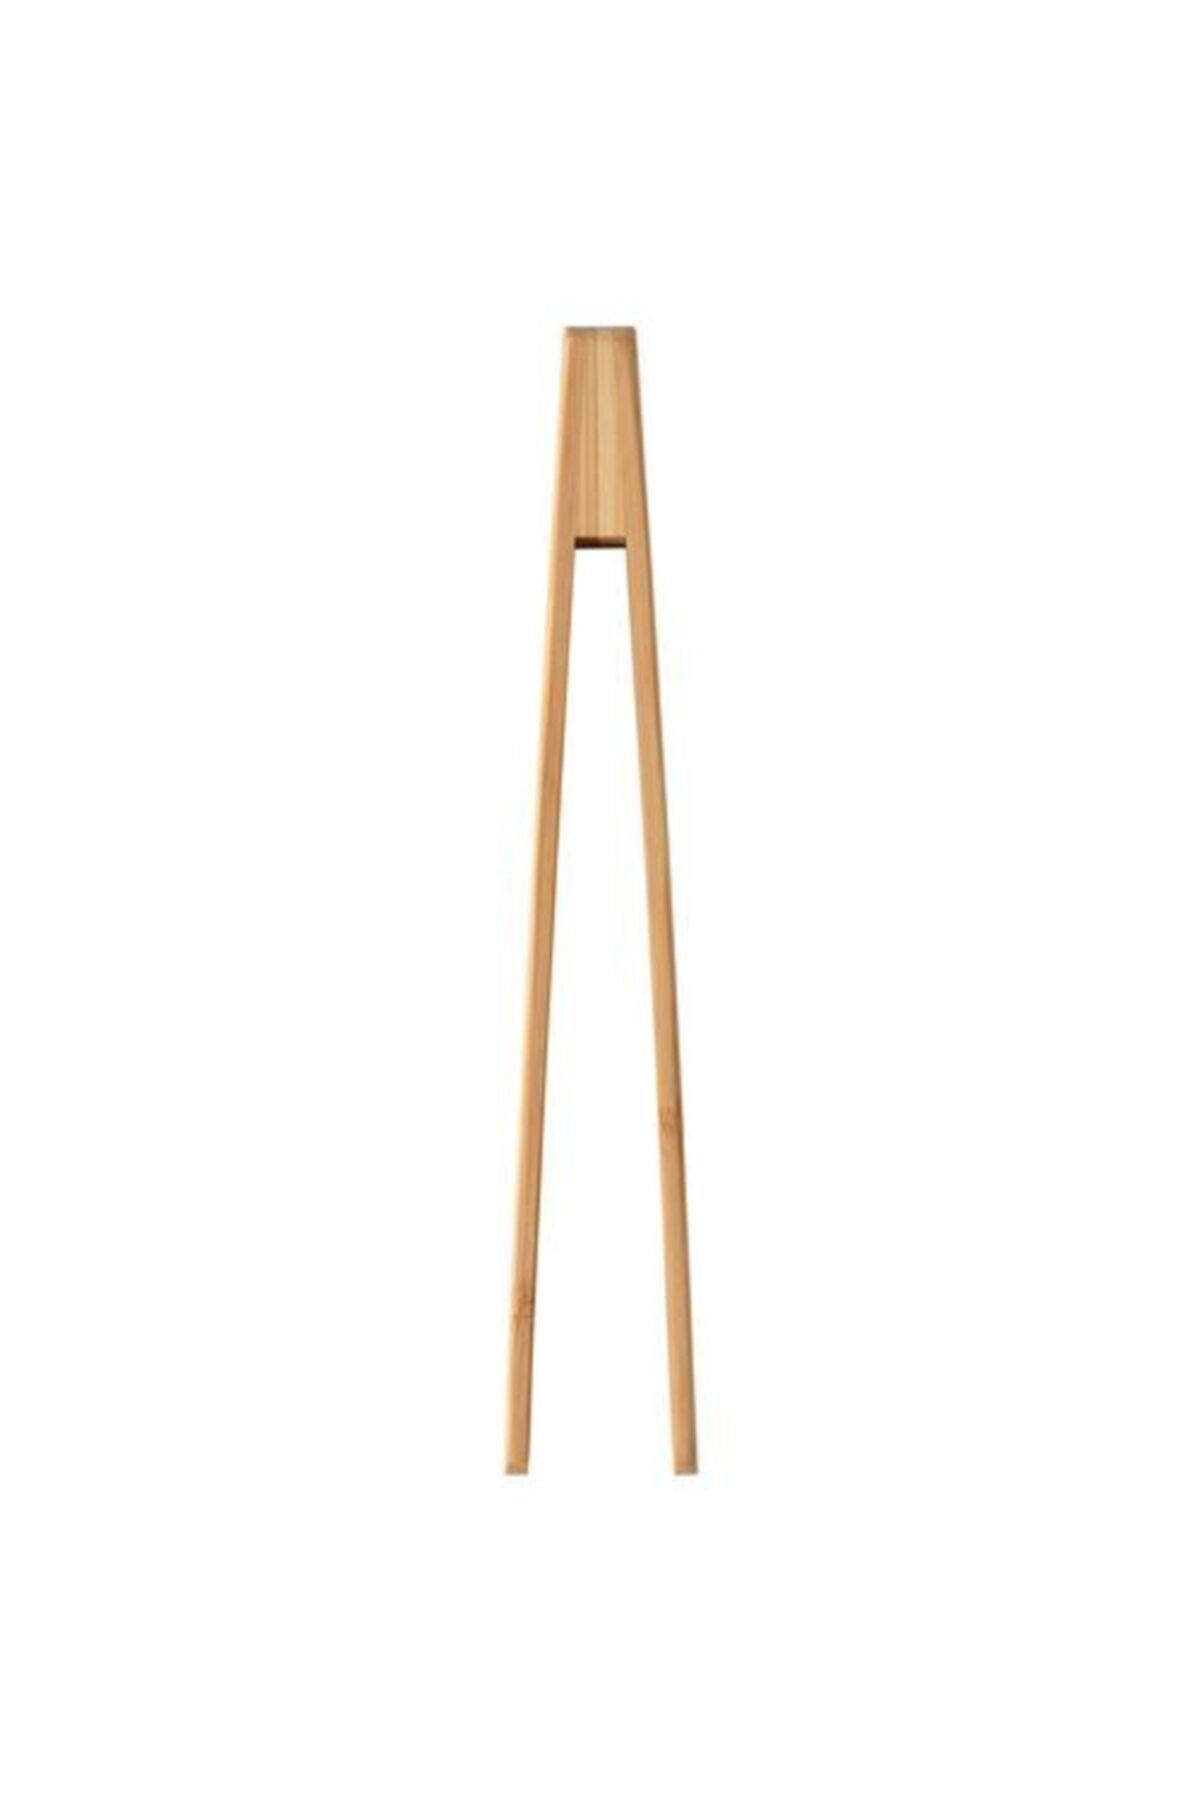 IKEA Bambu Servis Maşası Meridyendukkan 24 Cm Pratik Mutfak Gereçleri